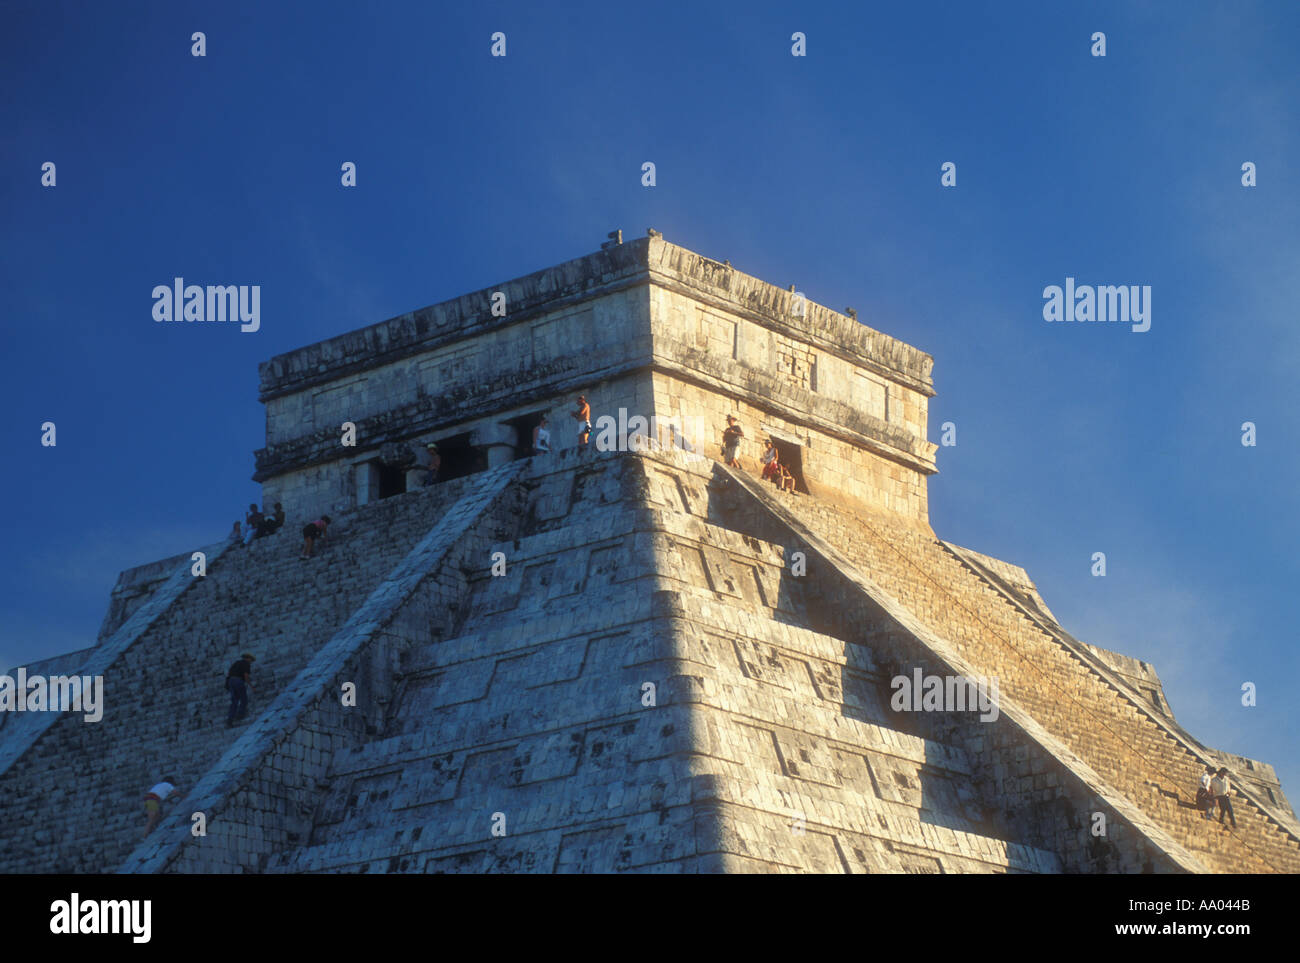 El Castillo-Pyramide auf den Maya-Ruinen von Chichen Itza Yucatan Mexiko Stockfoto